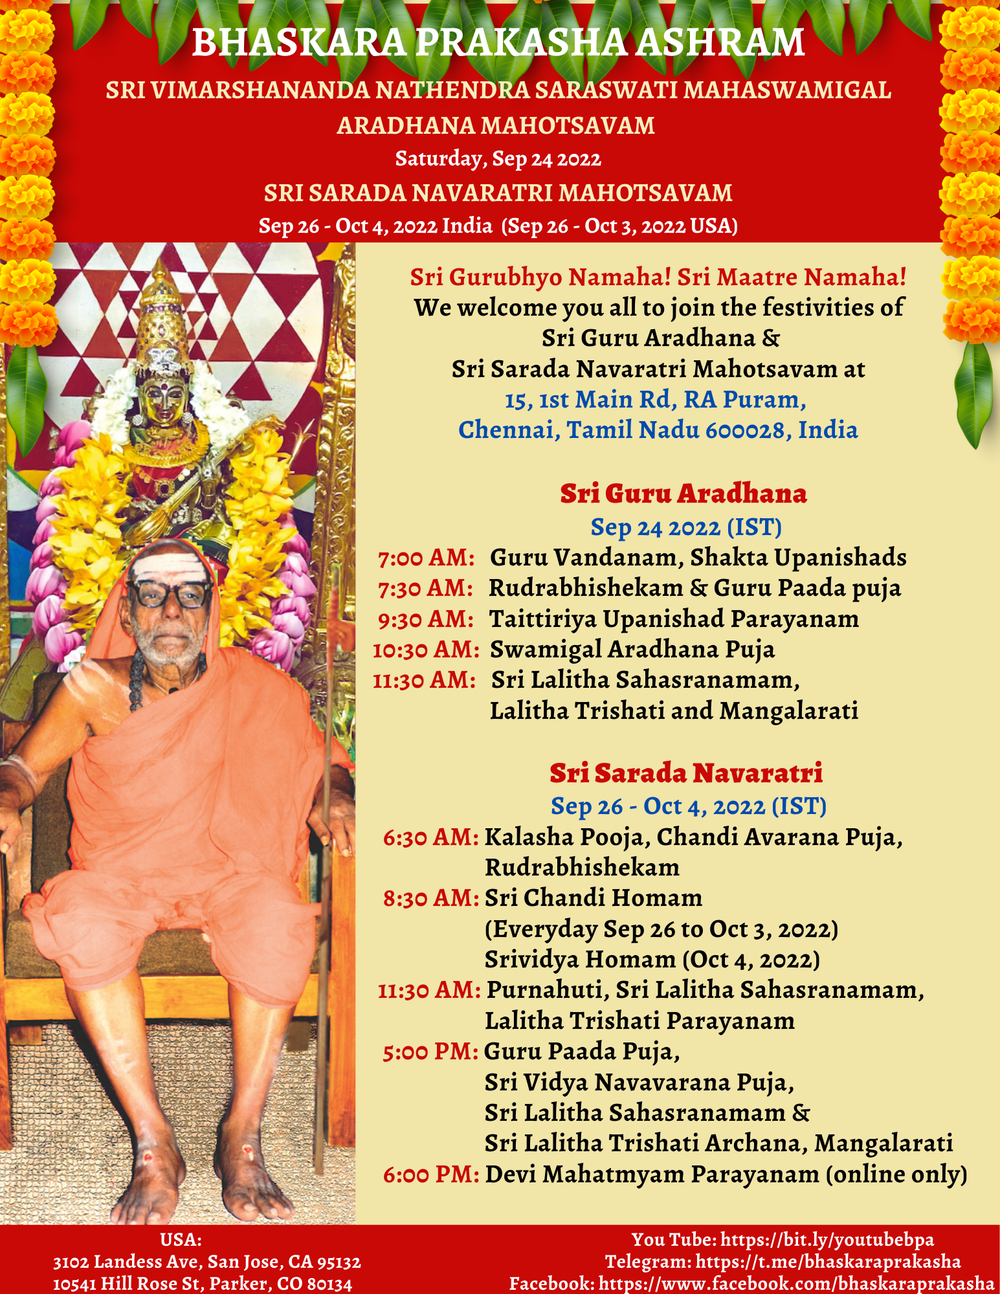 Sri Guru Aradhana and Navaratri Mahotsavam - Sept 24 to Oct 4 ...